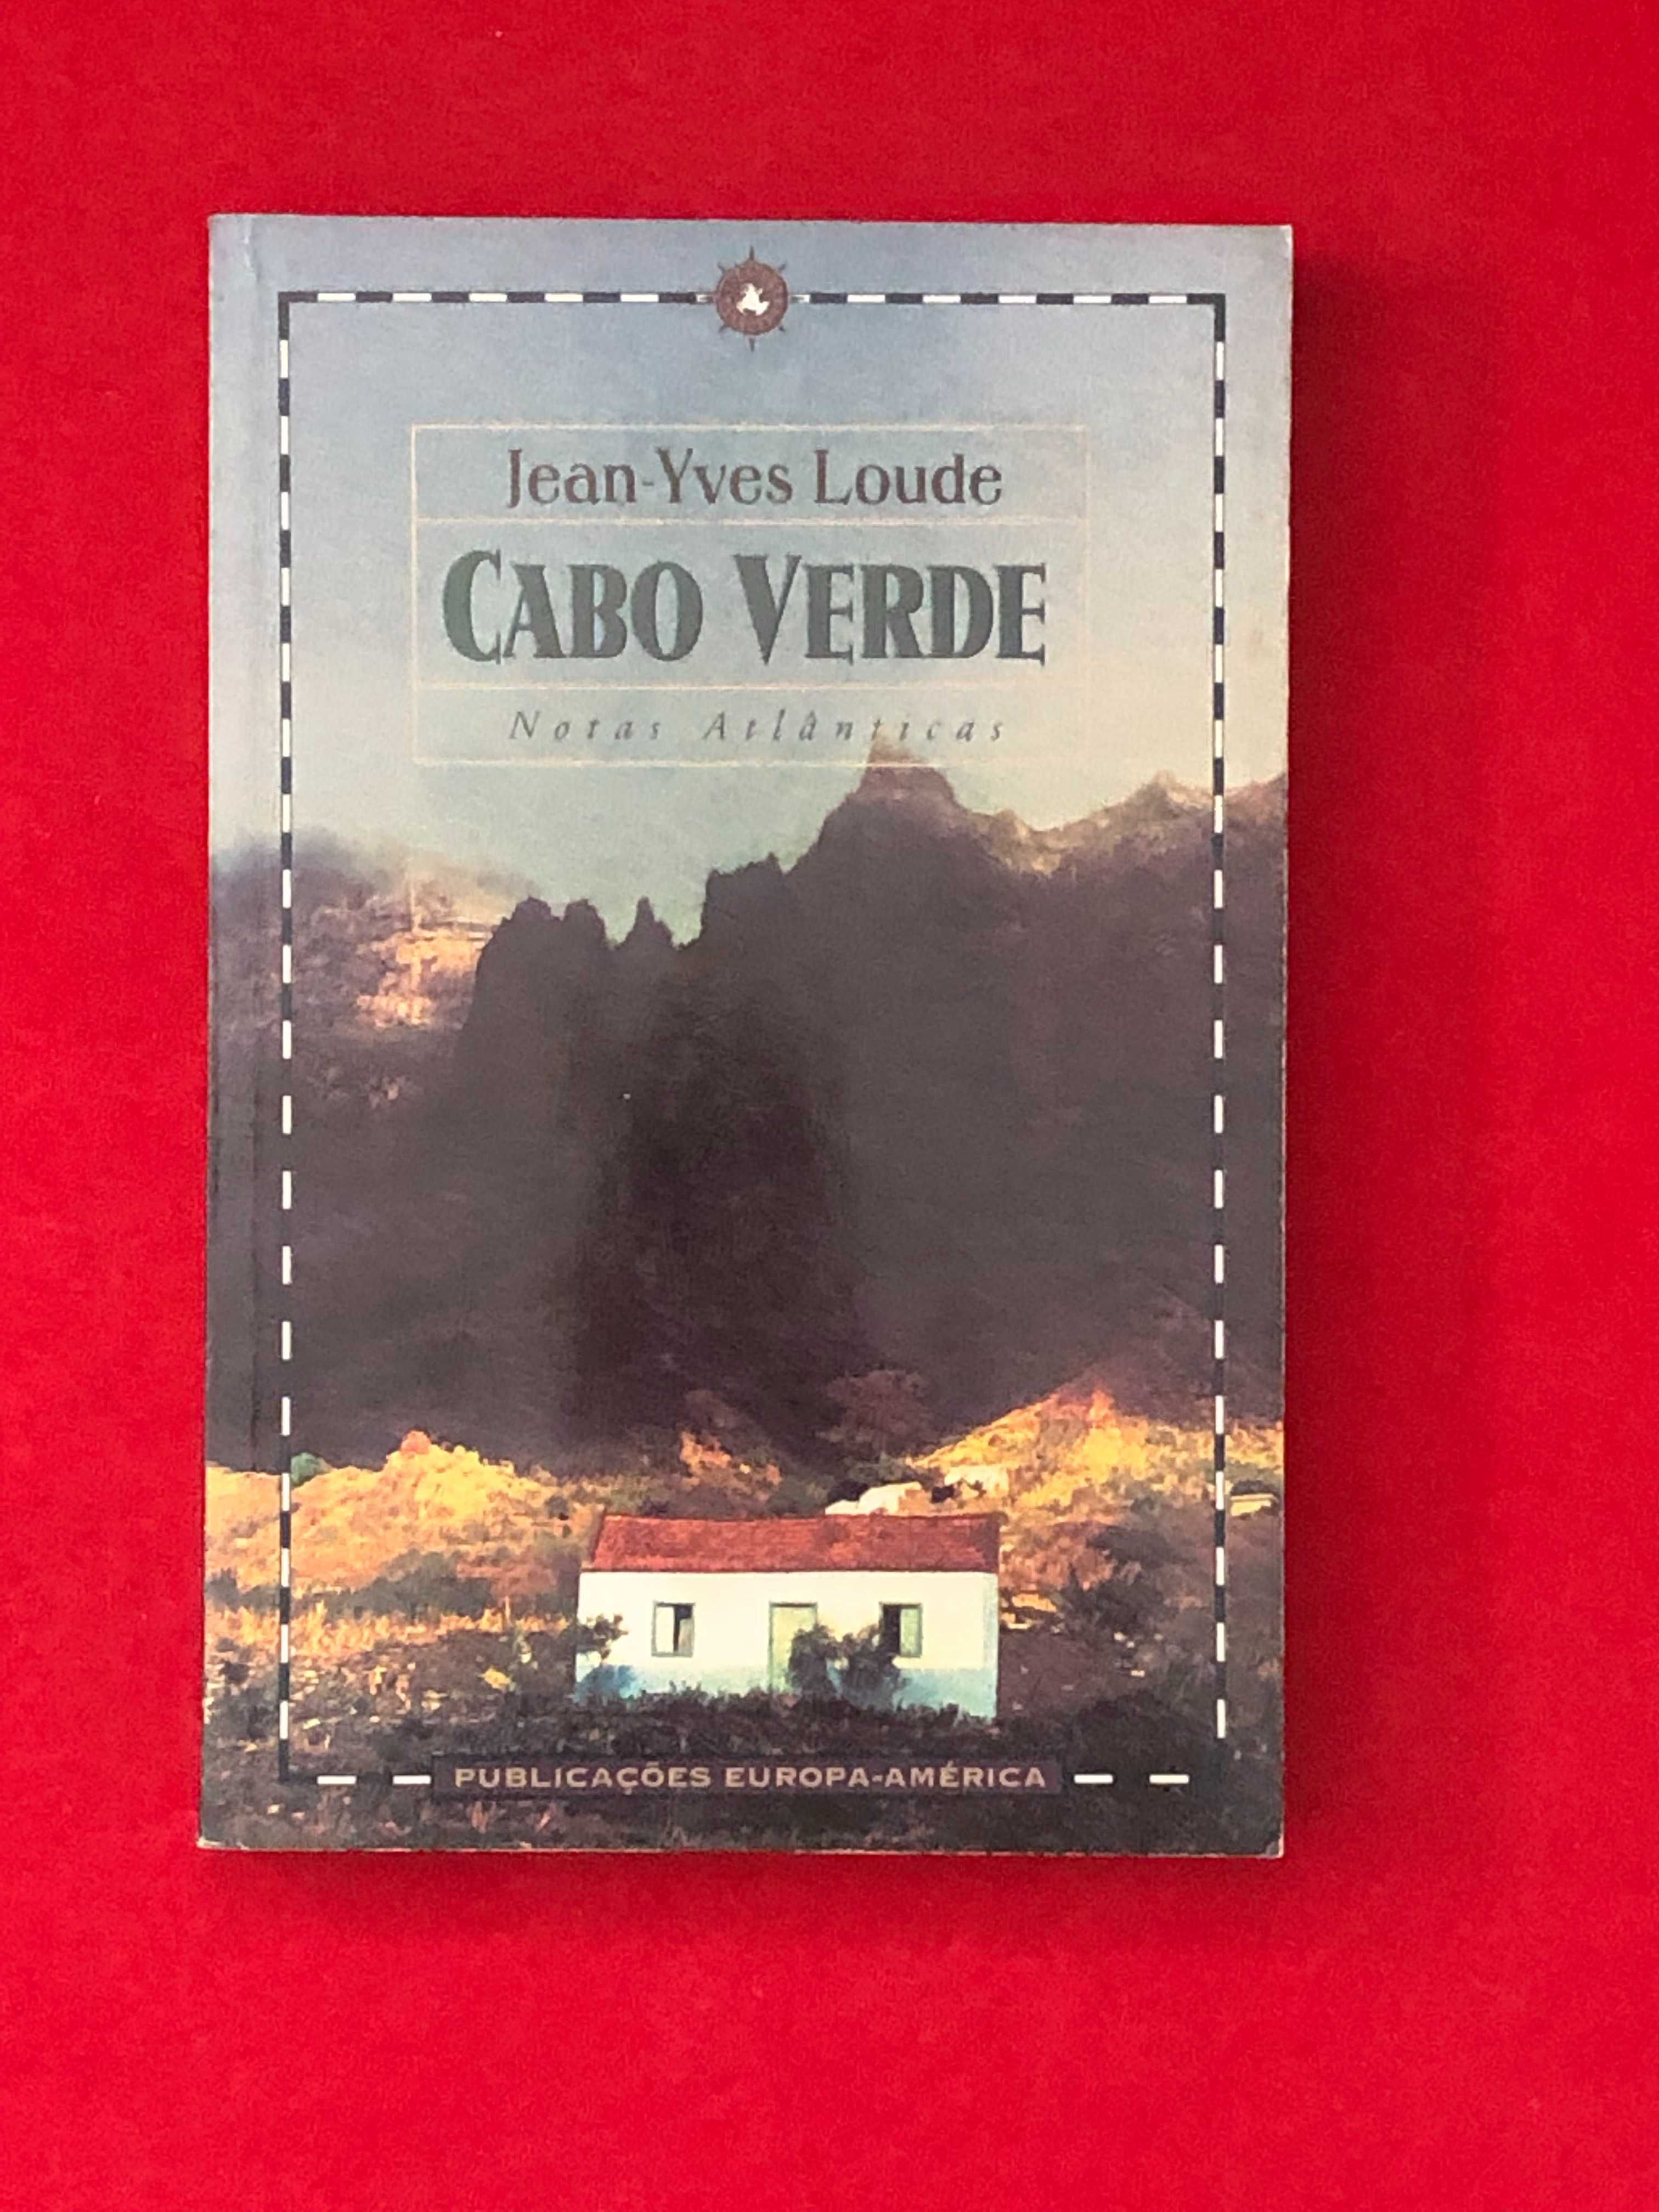 Cabo Verde – Notas Atlânticas - Jean-Yves Loude